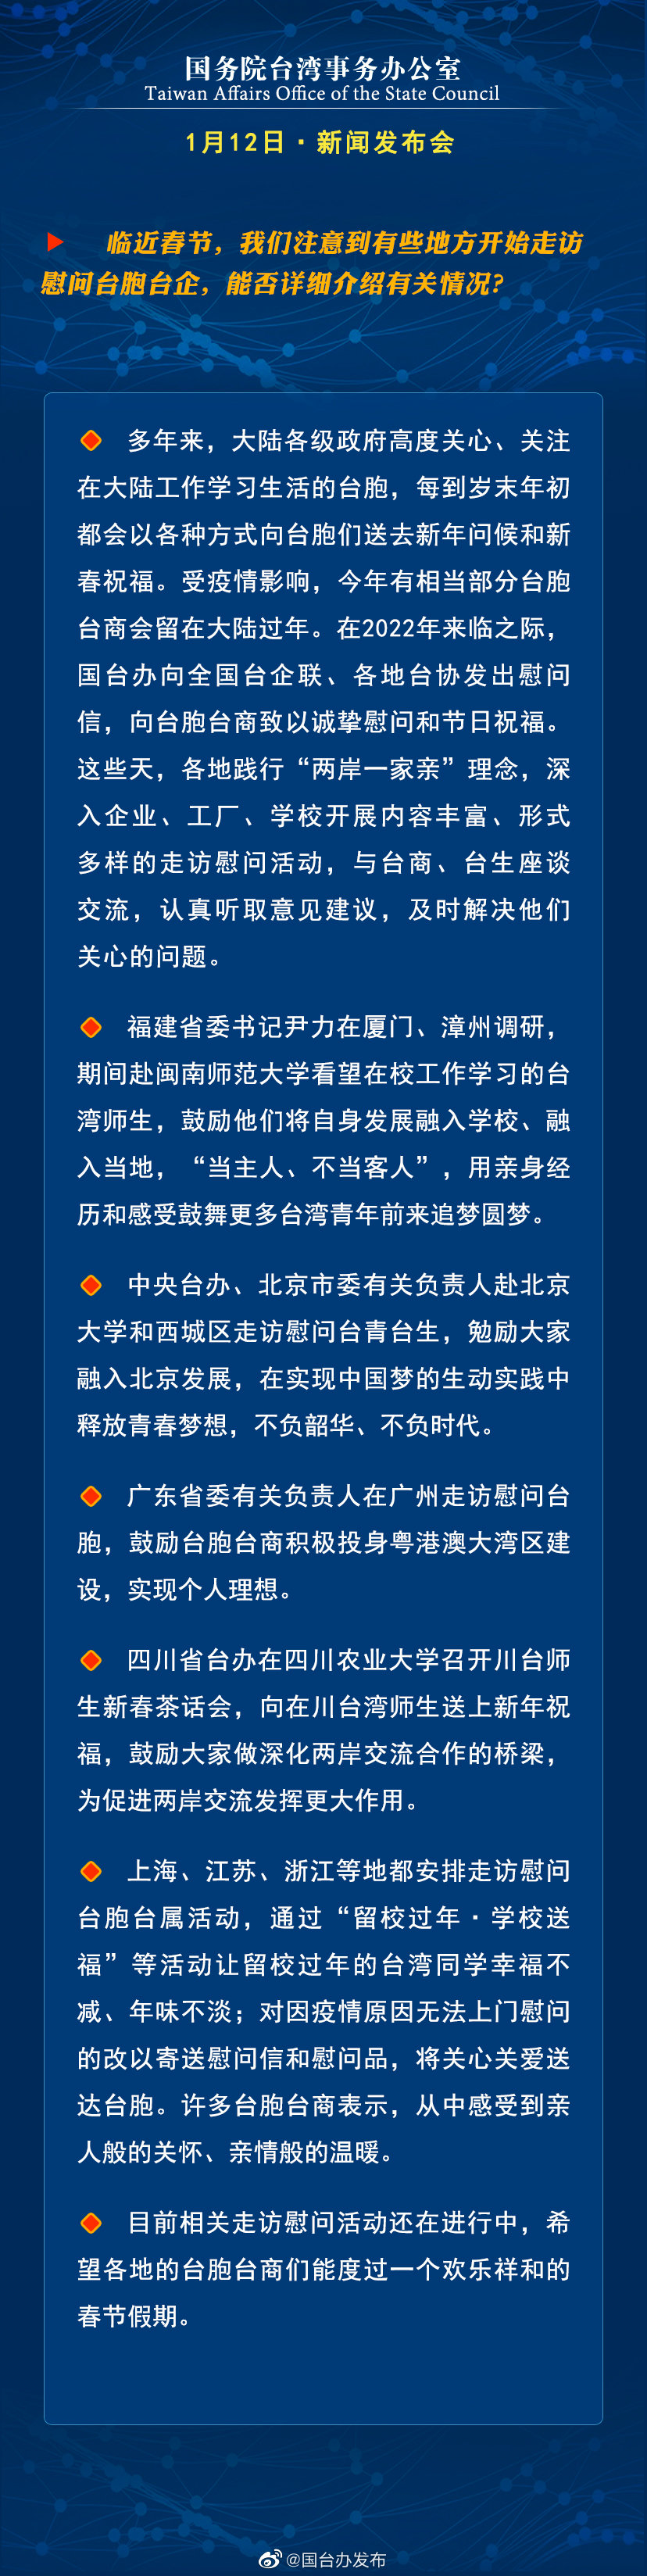 国务院台湾事务办公室1月12日·新闻发布会